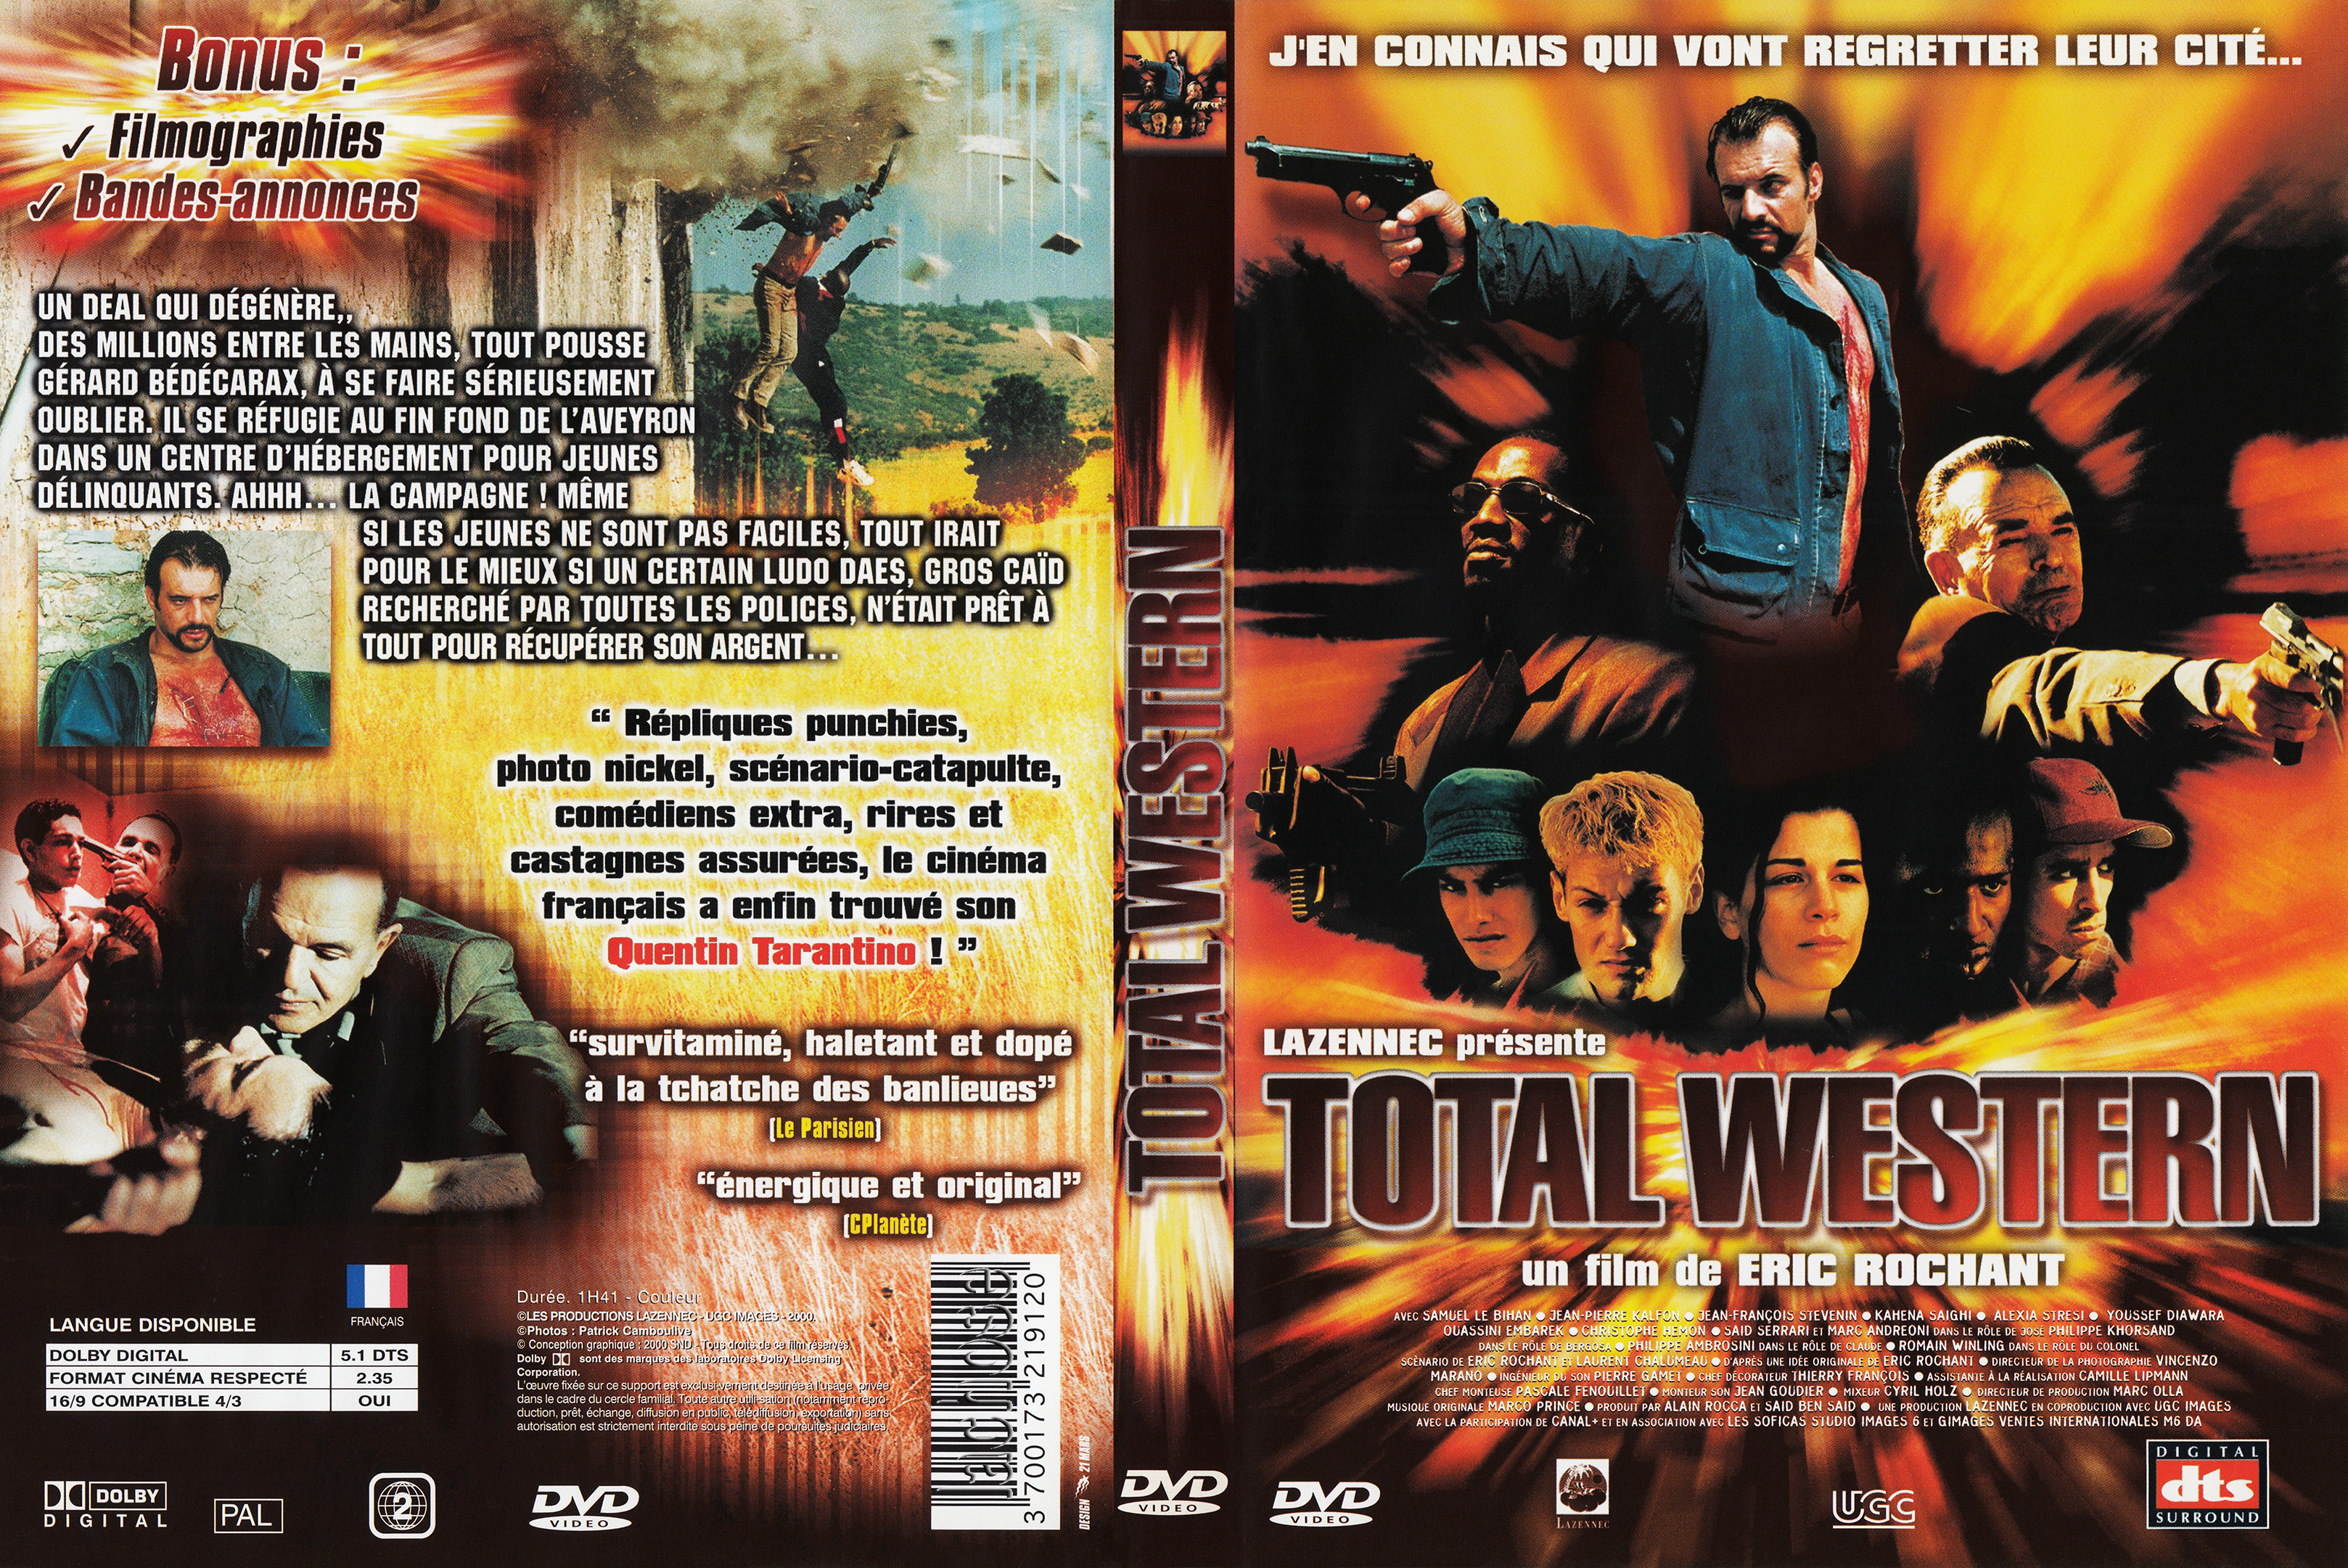 Jaquette DVD Total western v2